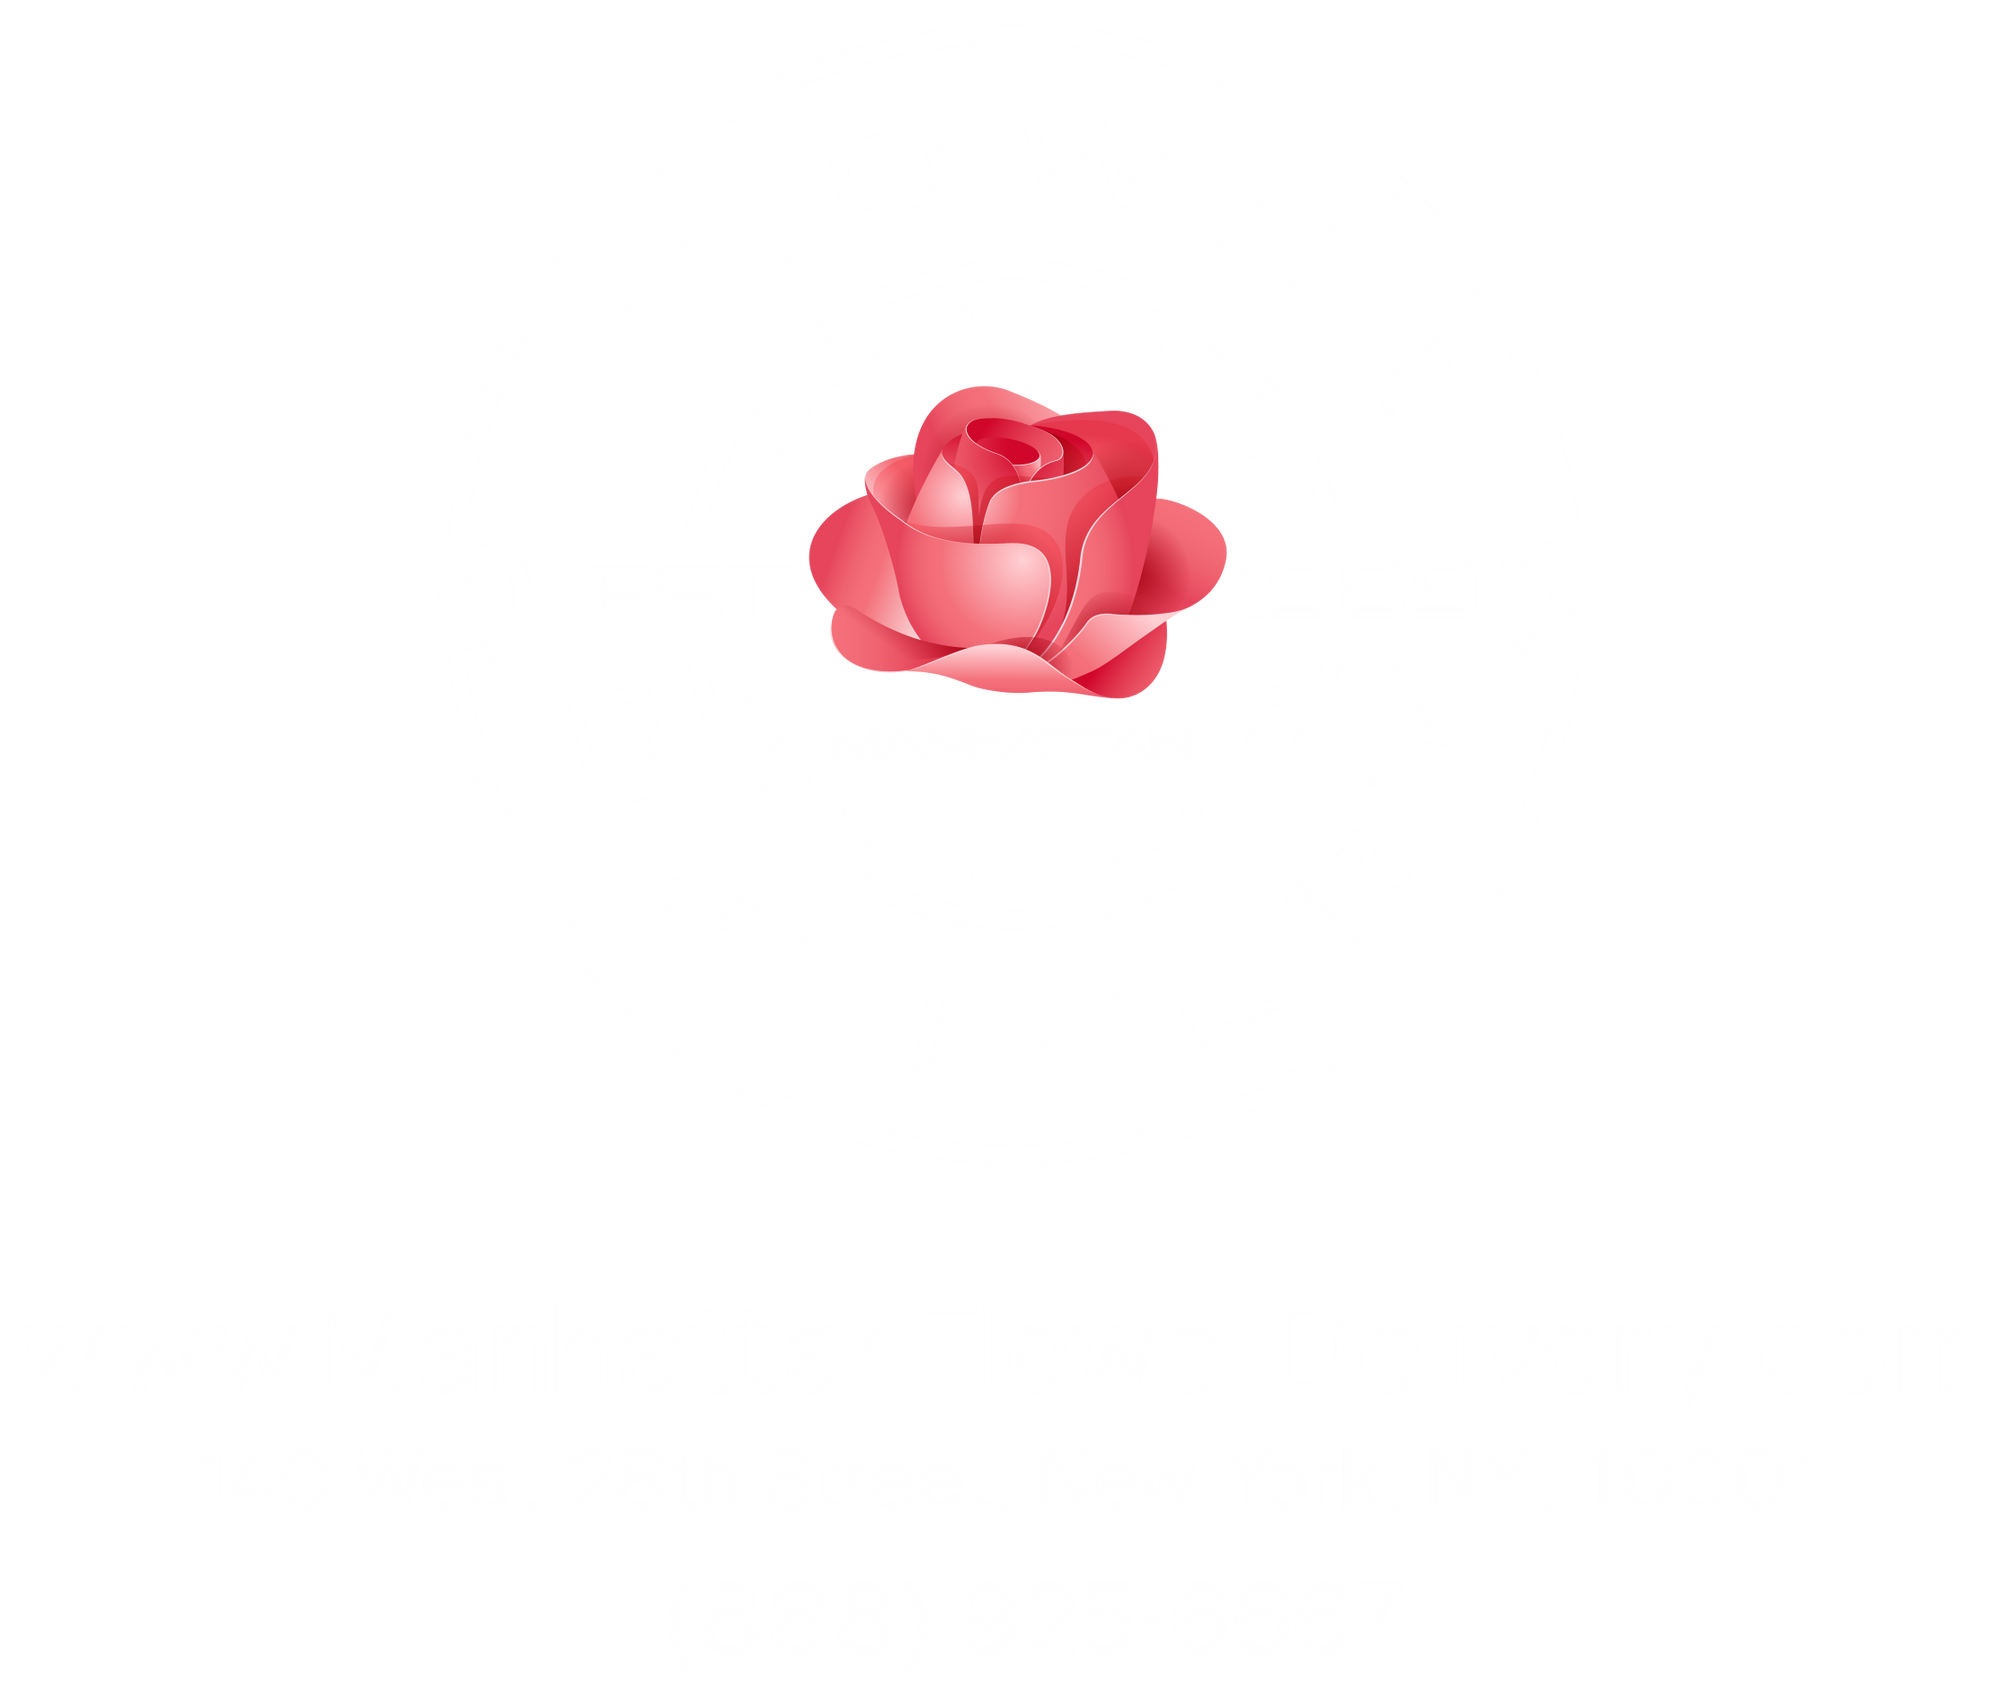 Manhattan Flower Delivery